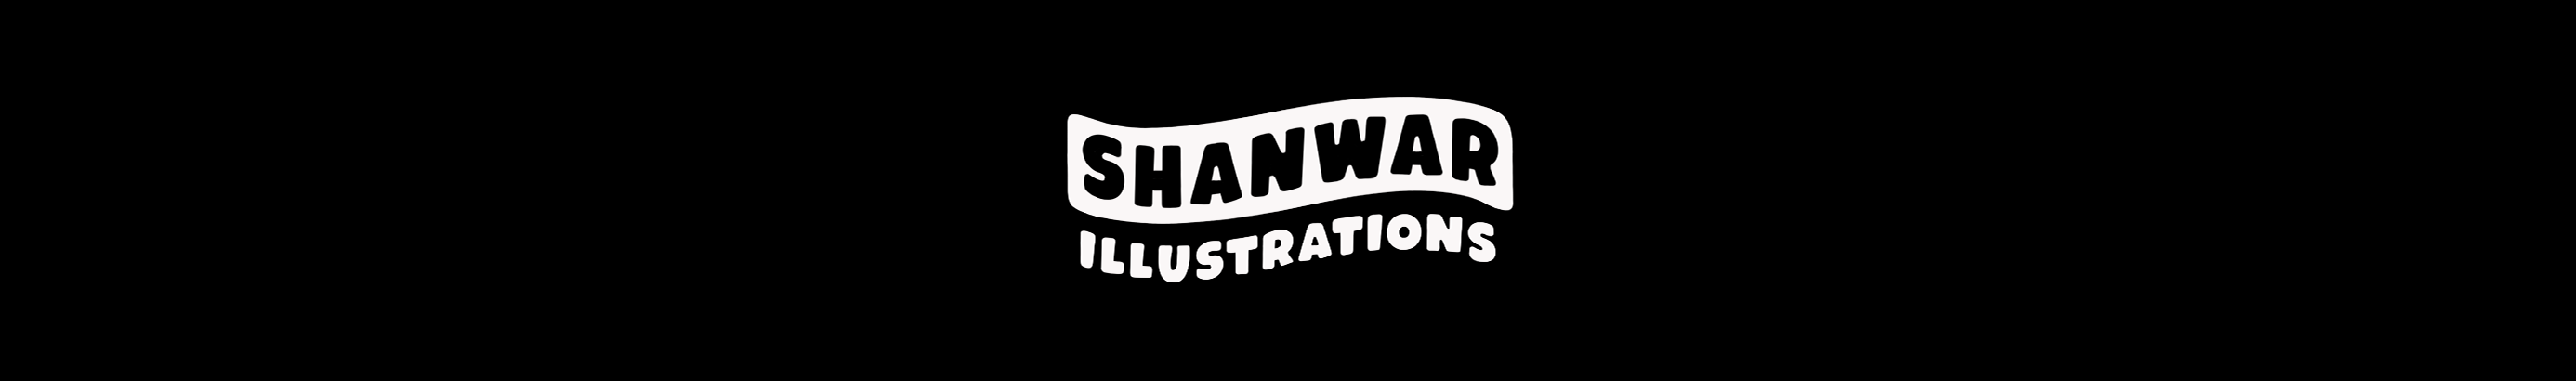 Shanwar Illustrations's profile banner